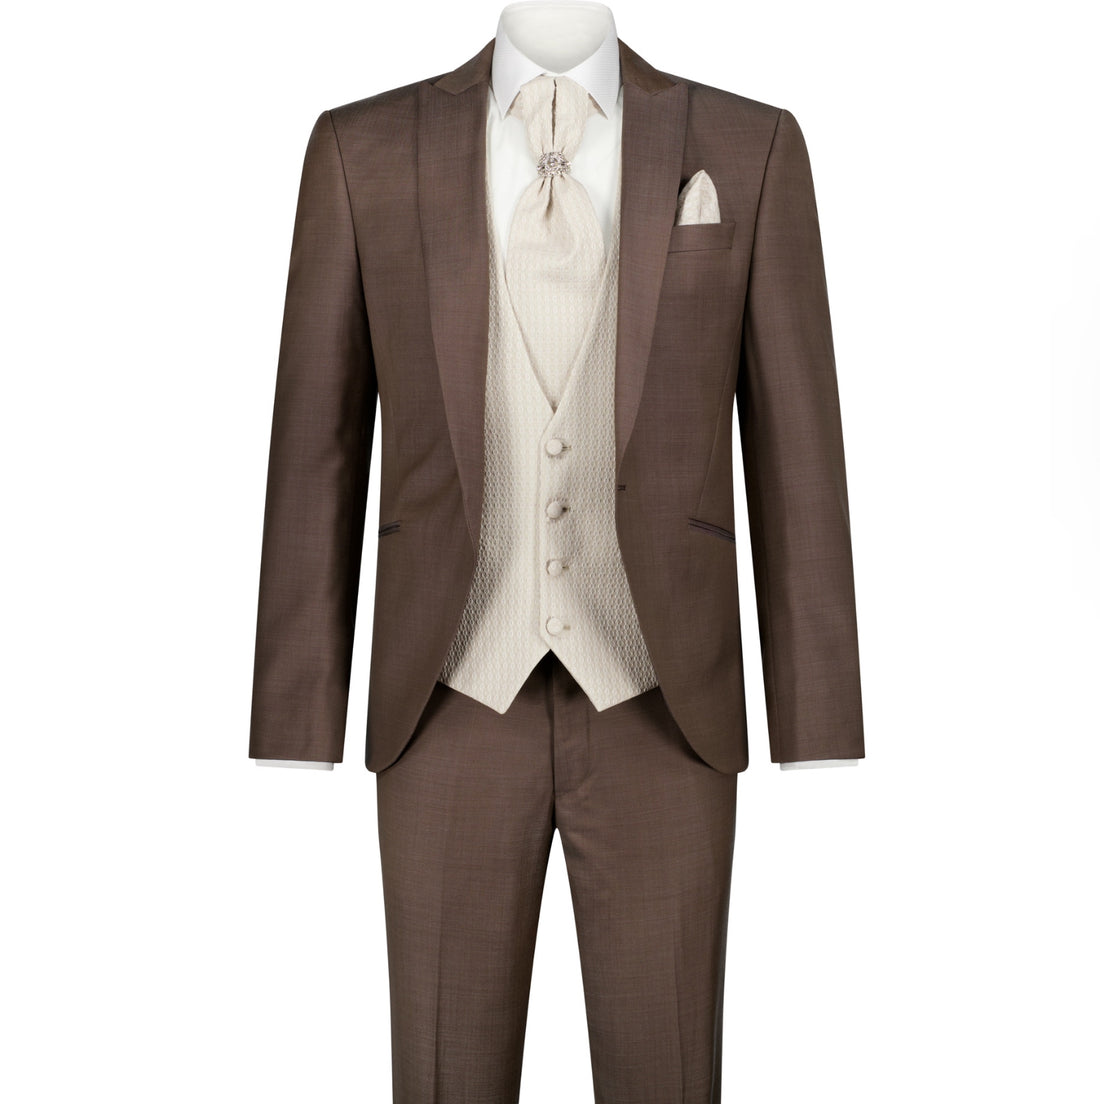 The Karim Suit